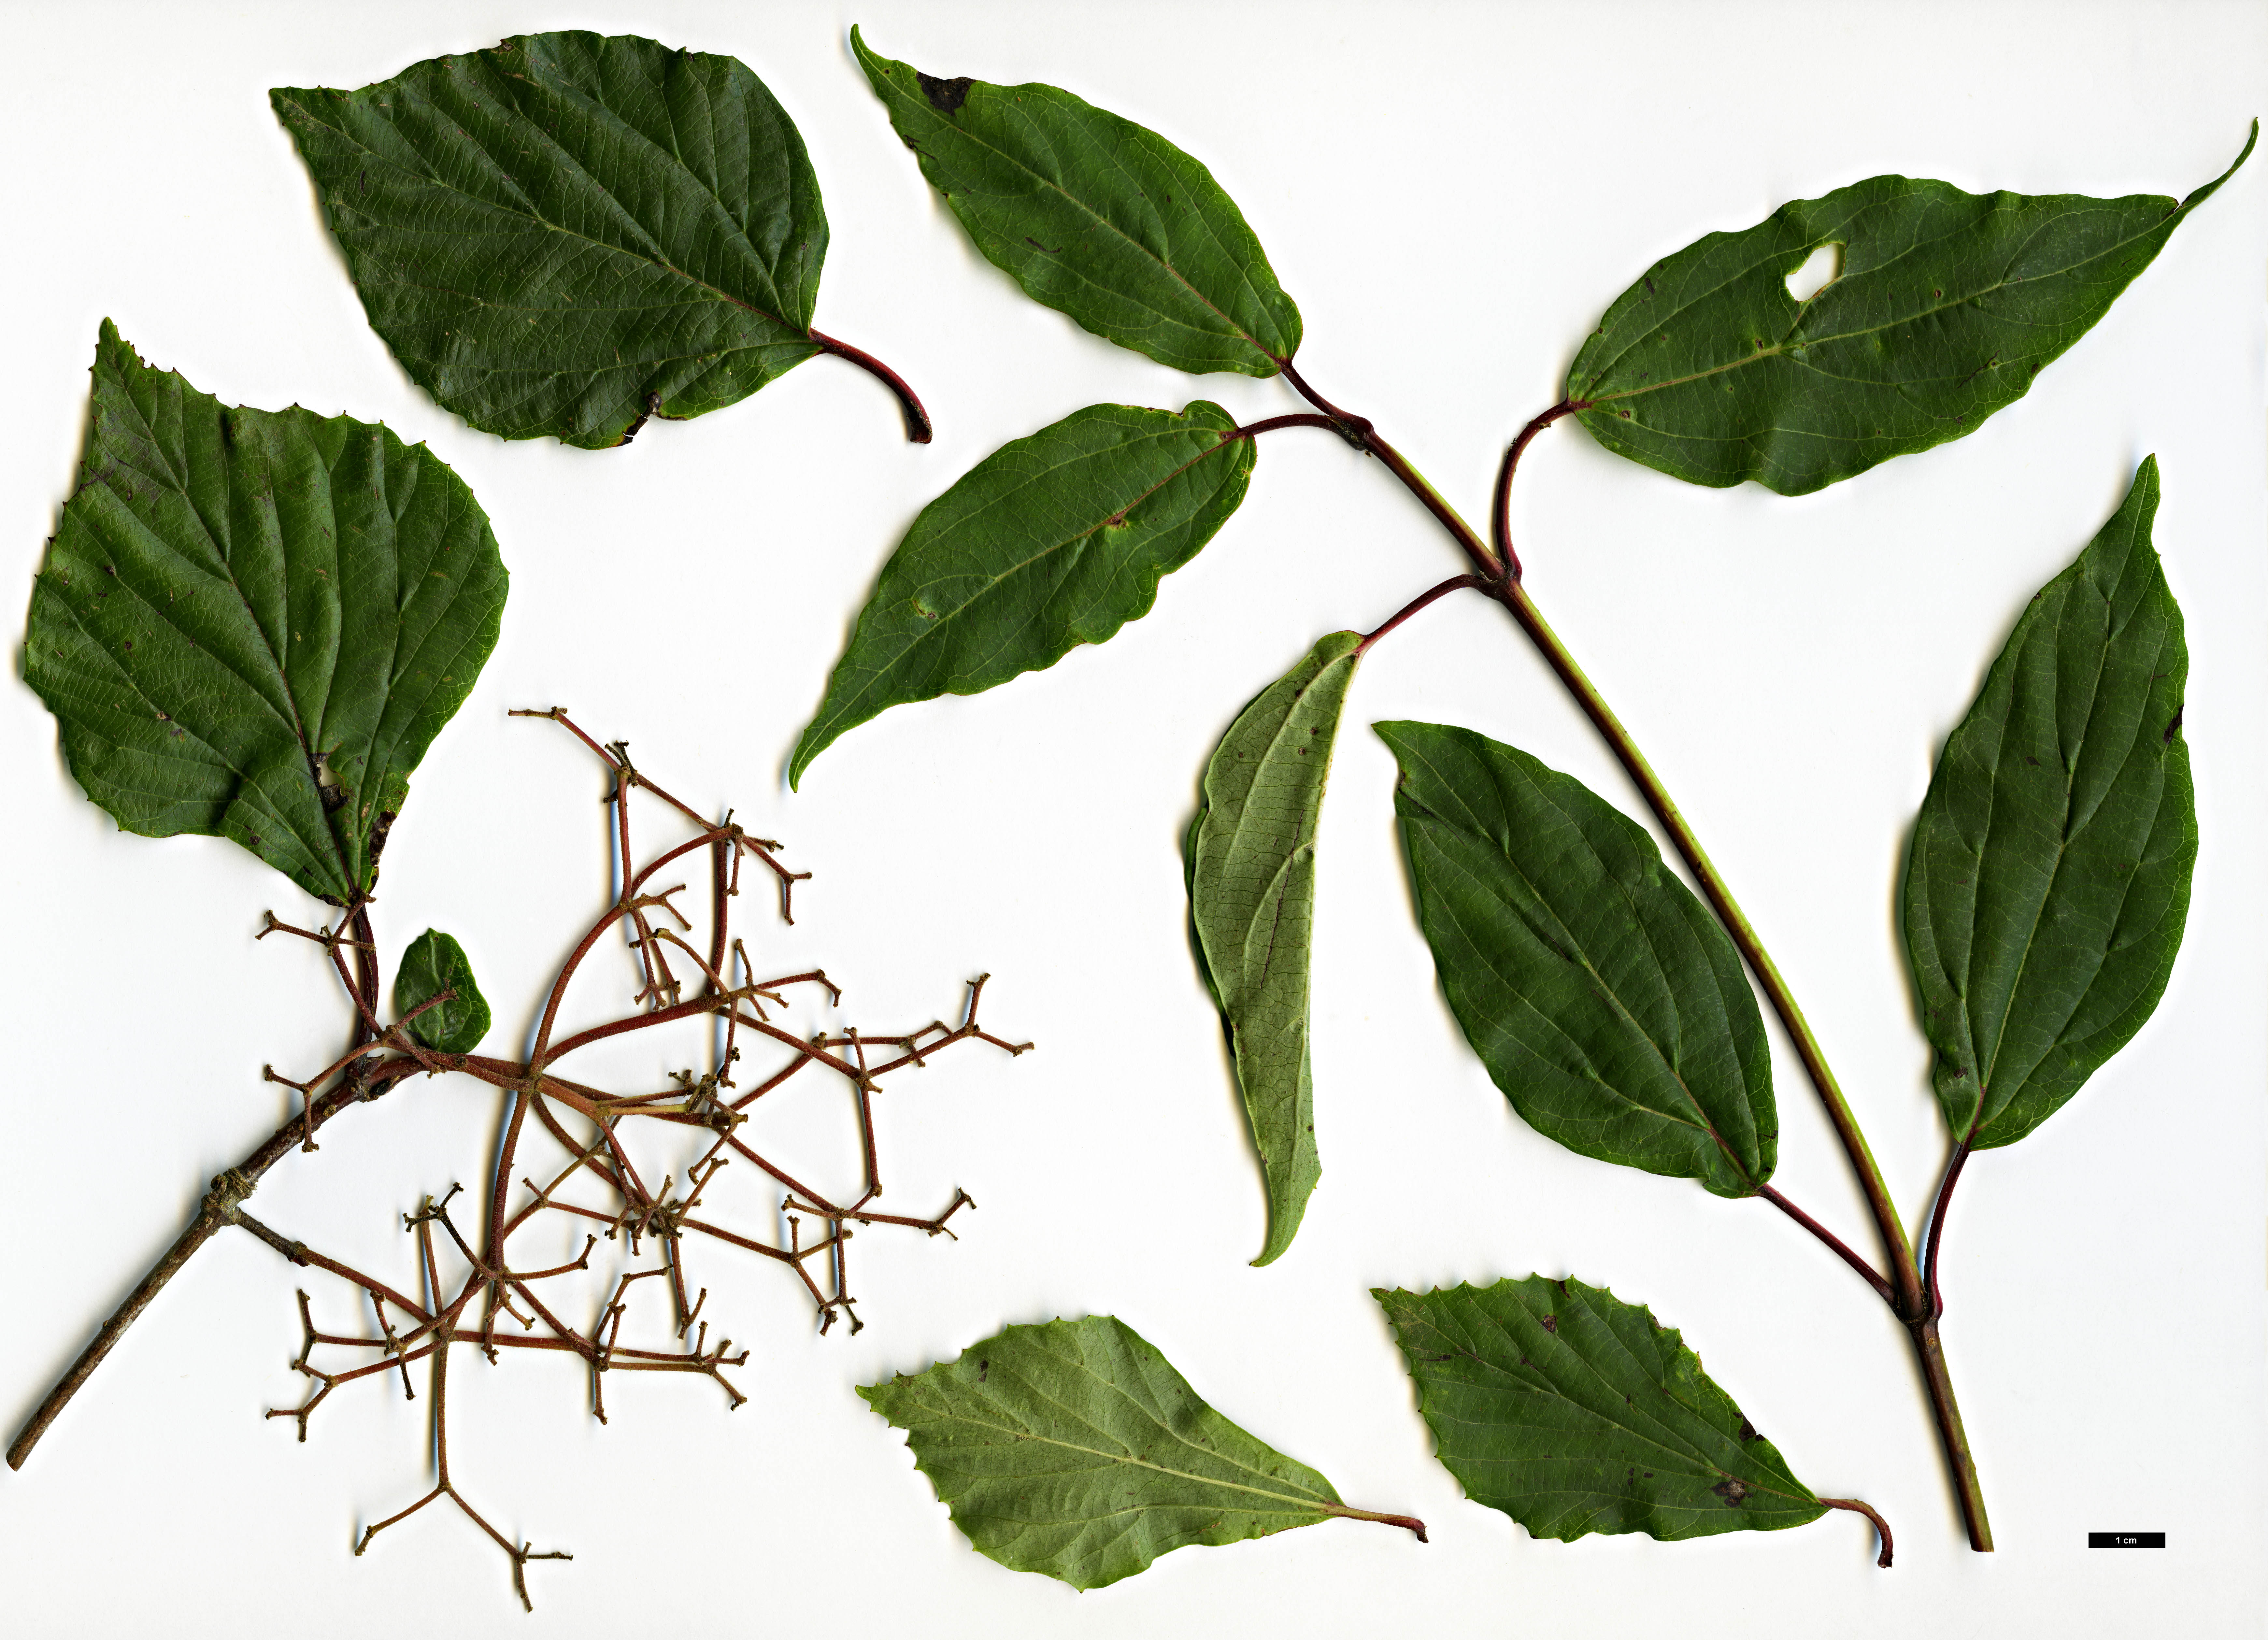 High resolution image: Family: Adoxaceae - Genus: Viburnum - Taxon: betulifolium